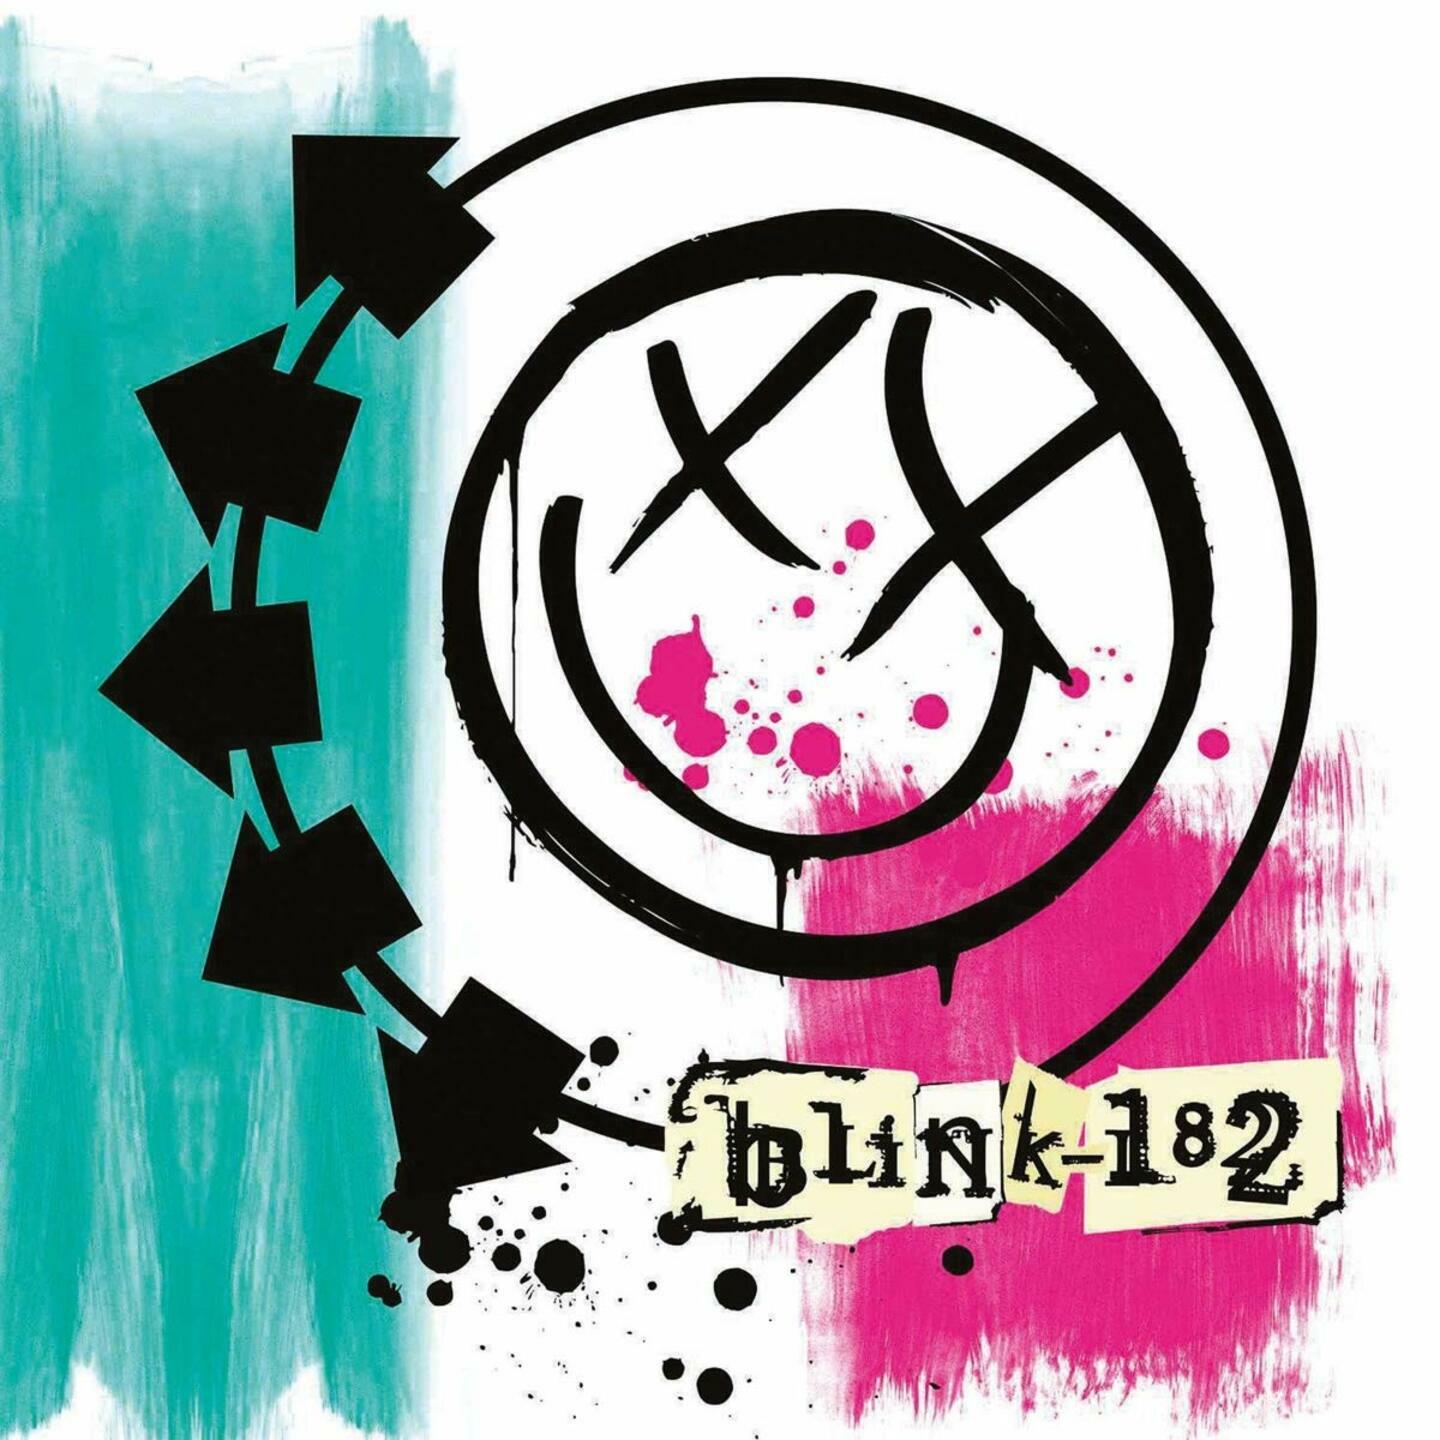 BLINK-182 - Blink-182 2xLP